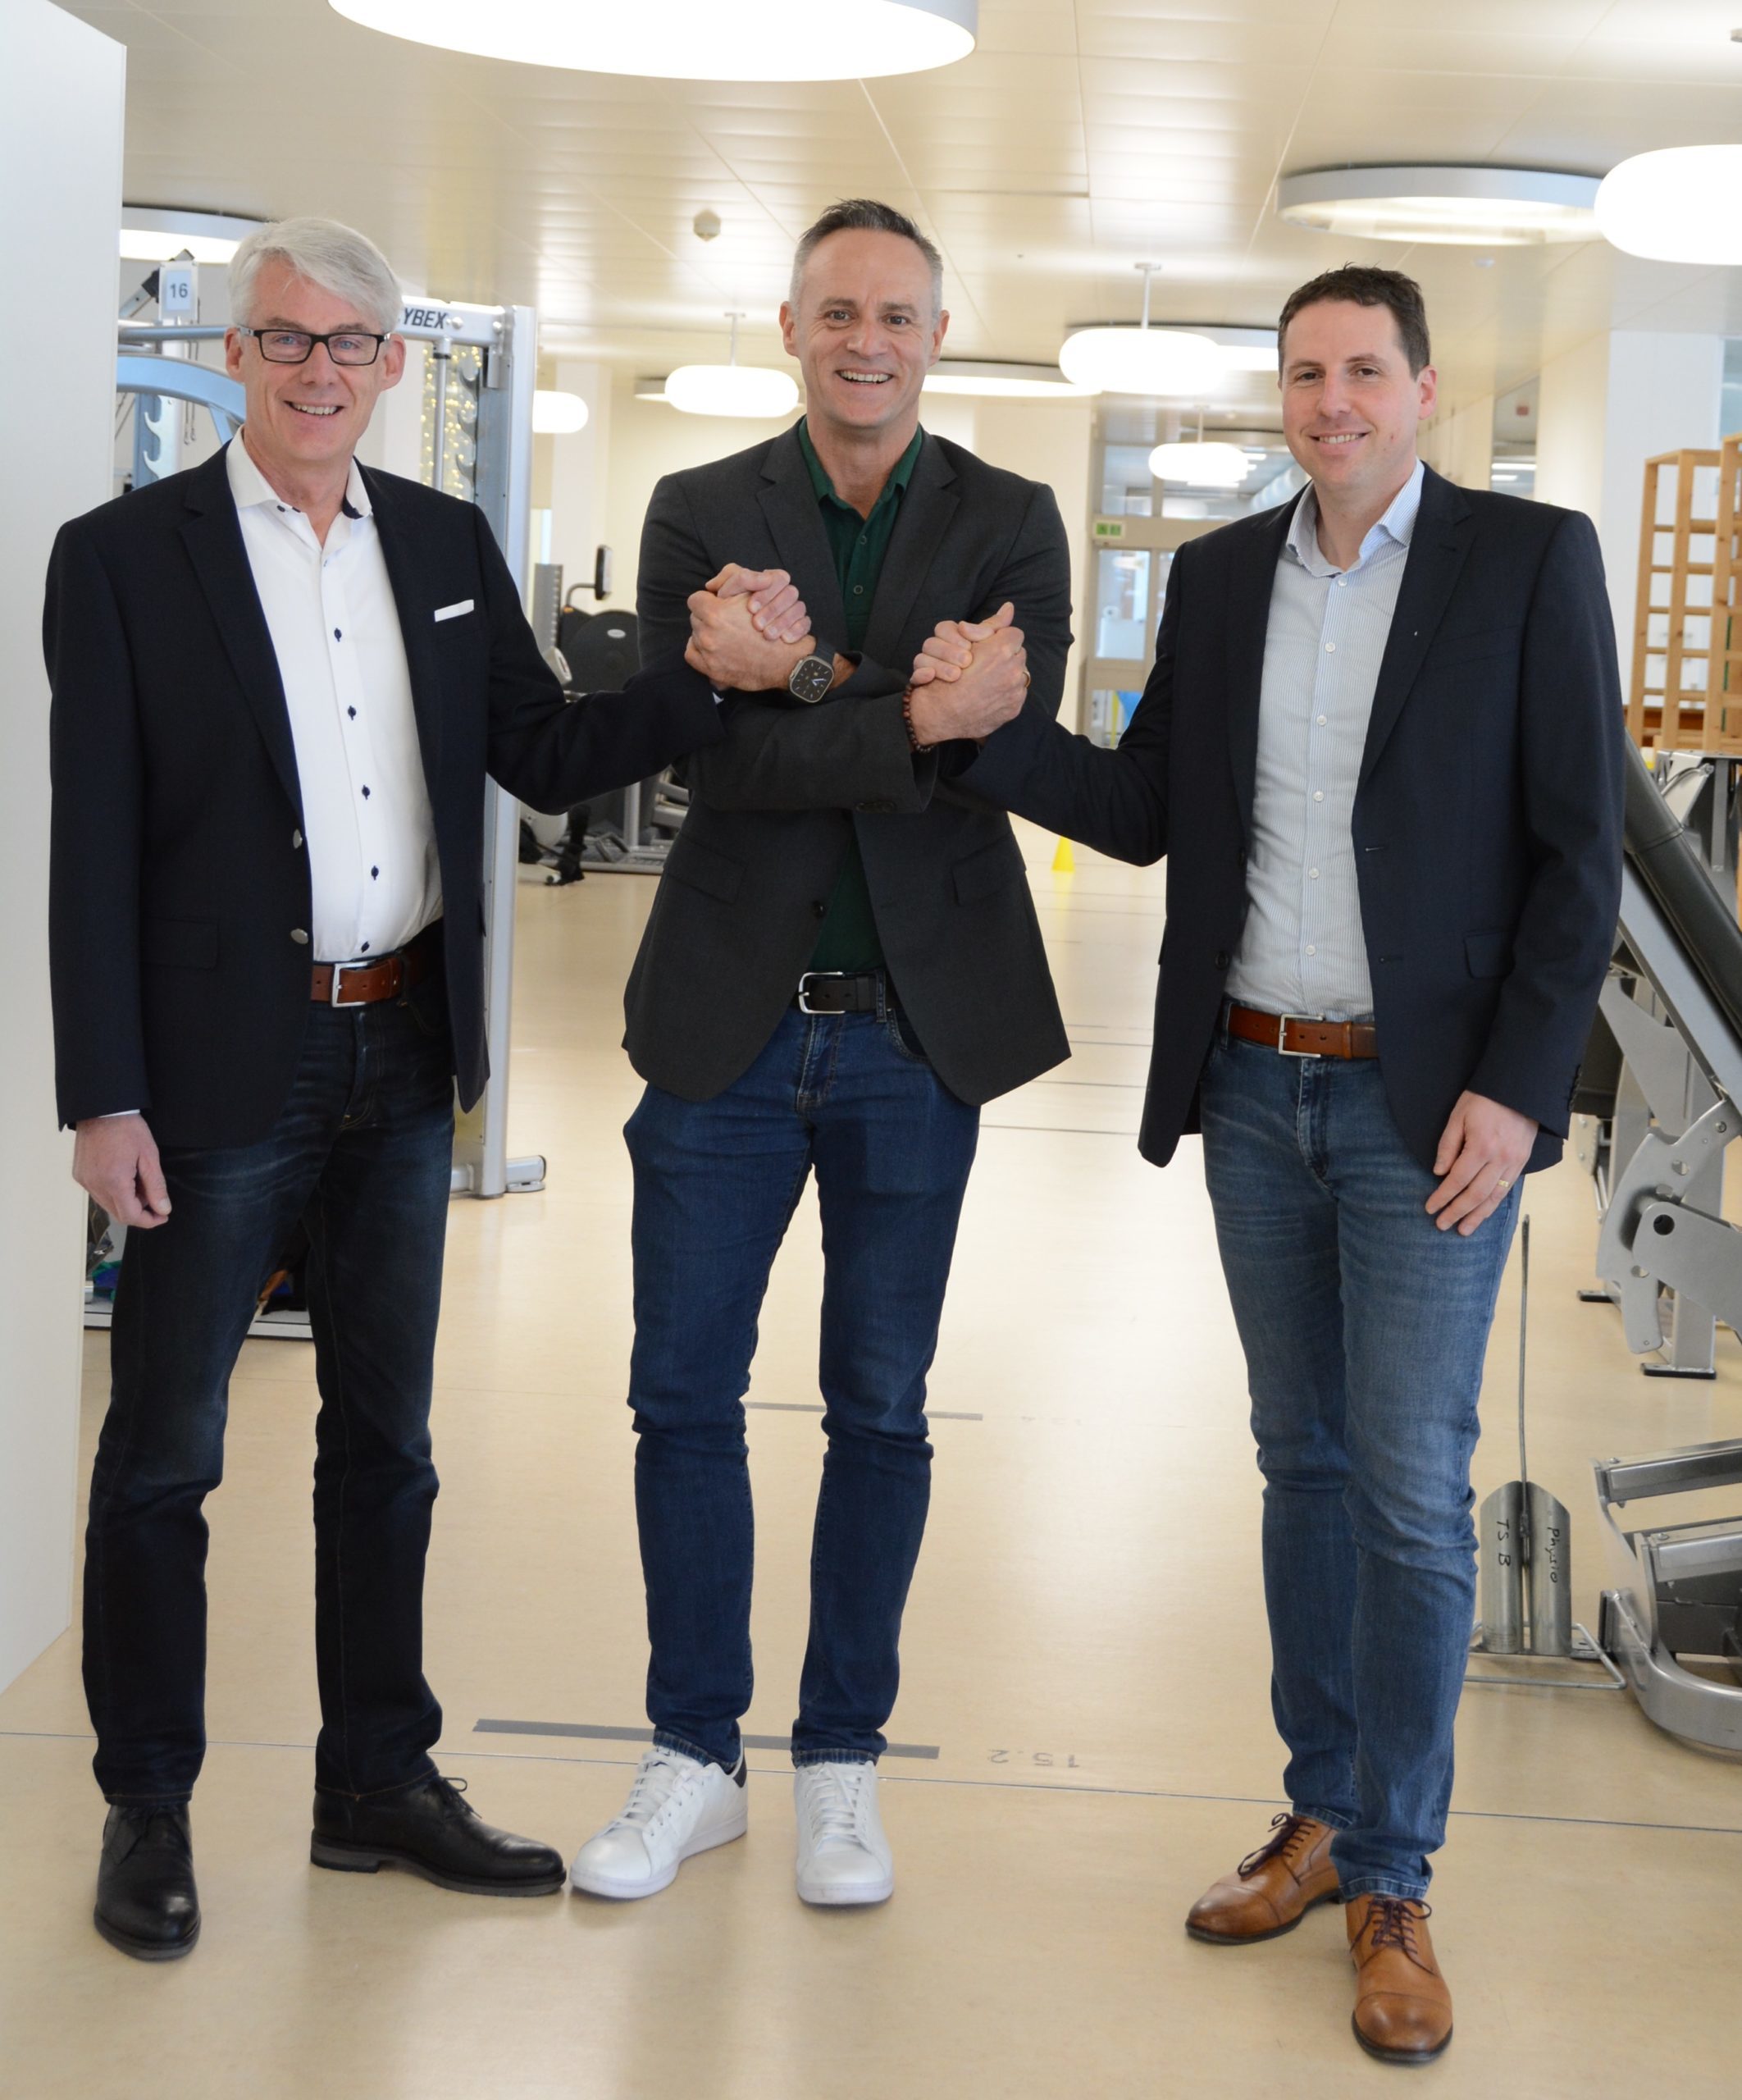 Neuer Direktor Therapien bei den Kliniken Valens Robert Durach wechselt in die Geschäftsleitung